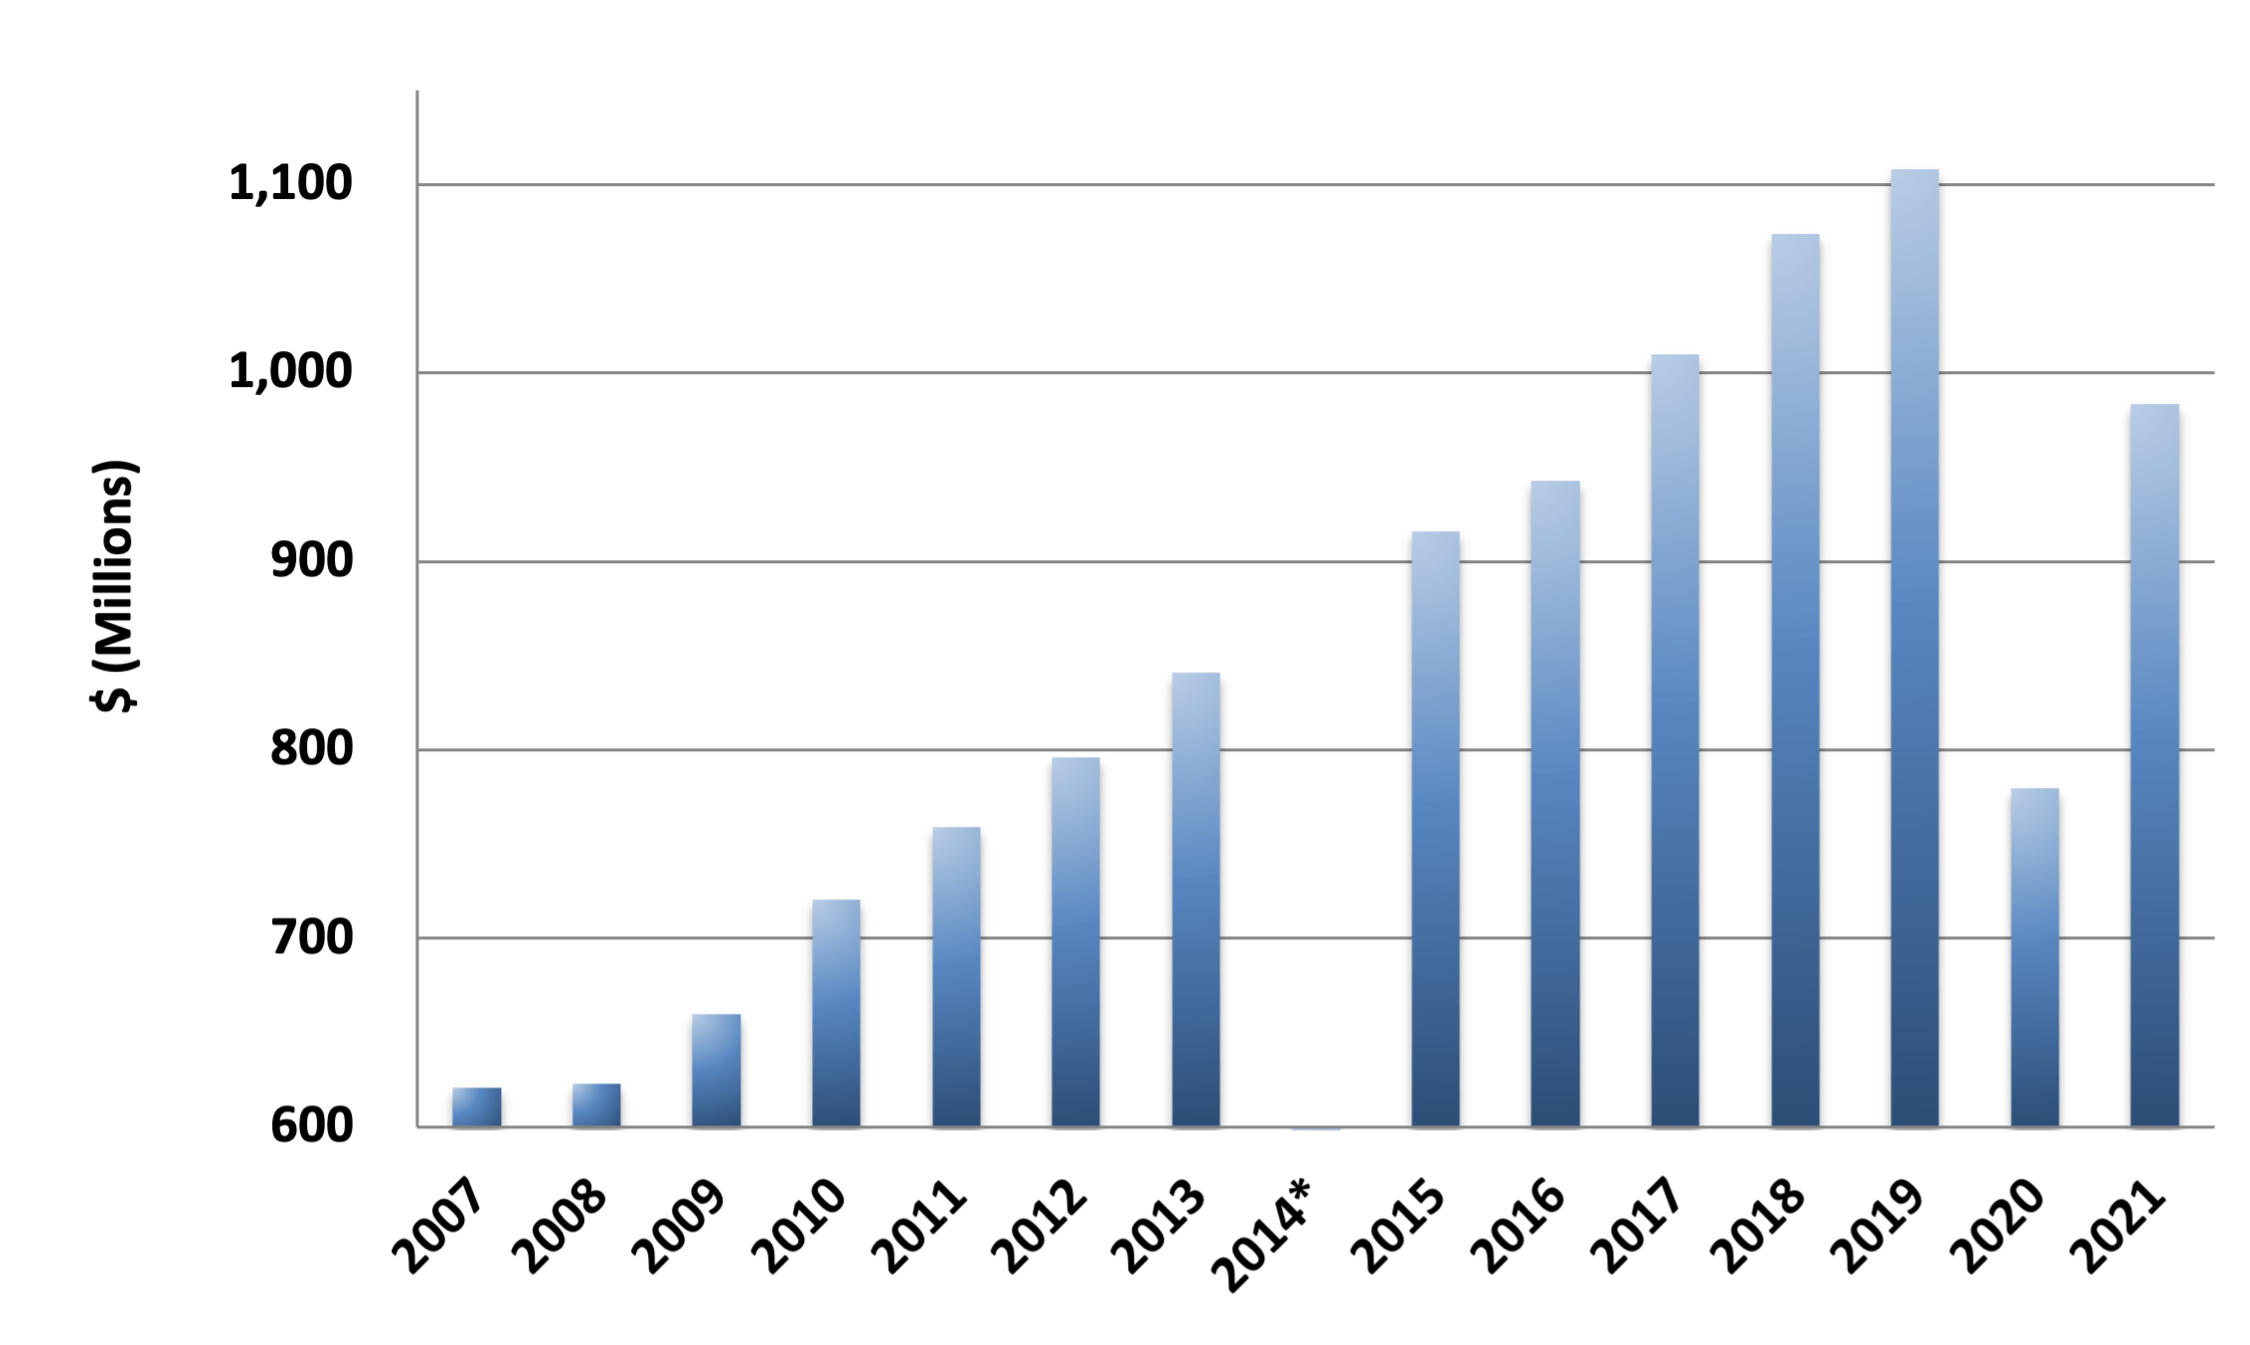 College Board's Revenue 2007 to 2016